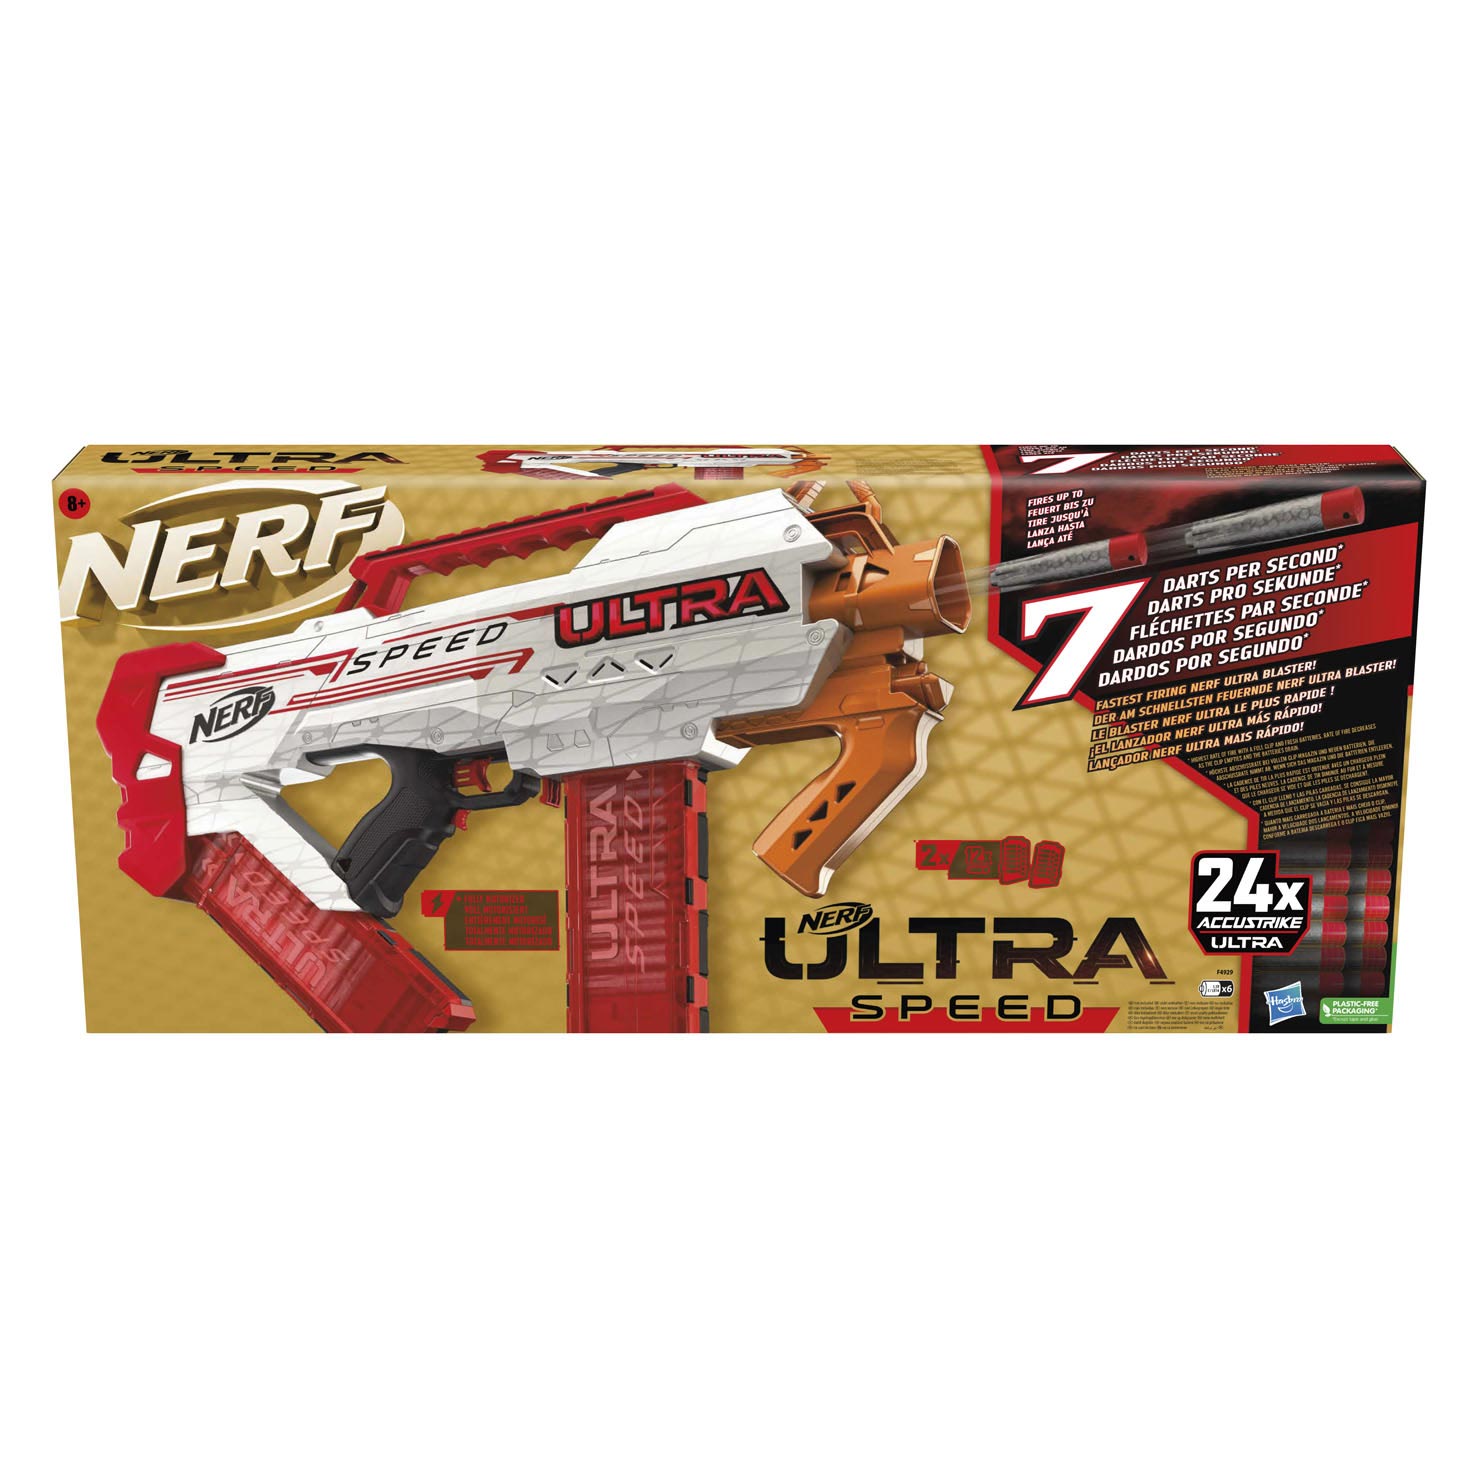 Nerf Ultra Speed / 7 Darts pro Sekunde [Vorstellung + Schusstest